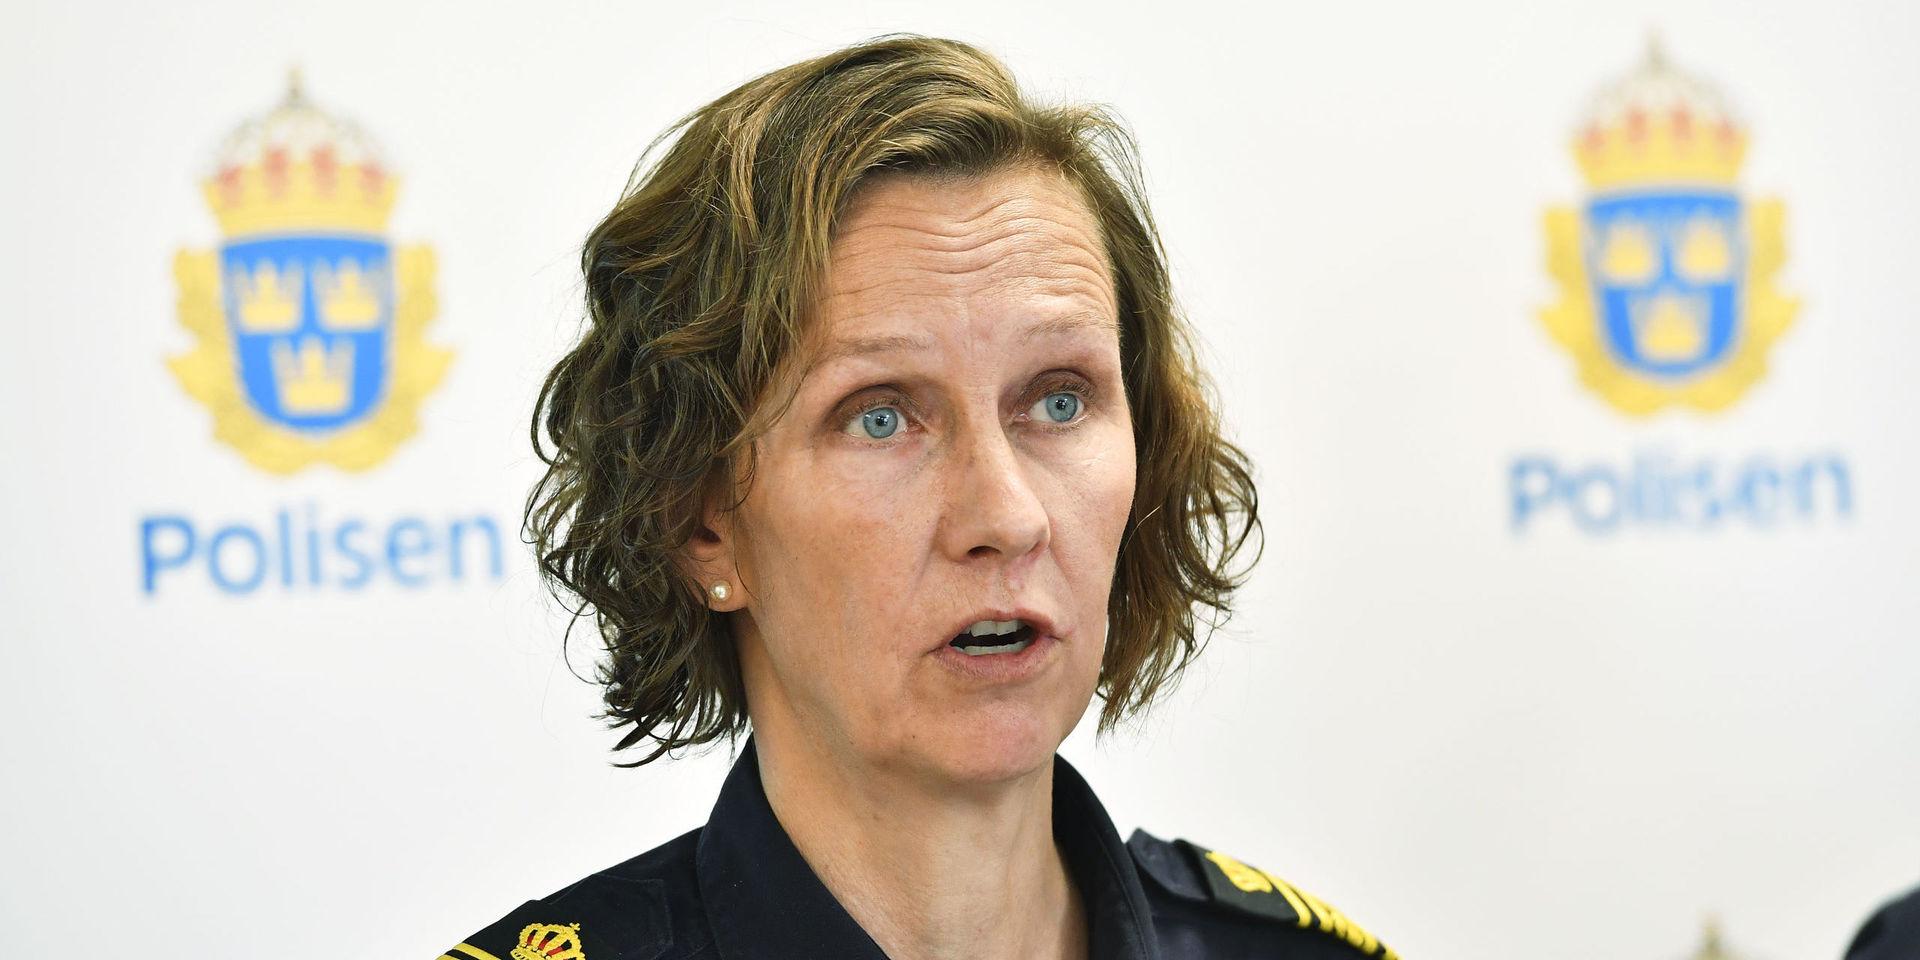 Carolina Paasikivi, polisområdeschef i Stockholm, tycker att vi sak vara uppmärksamma, men inte skräckslagna. Arkivbild.